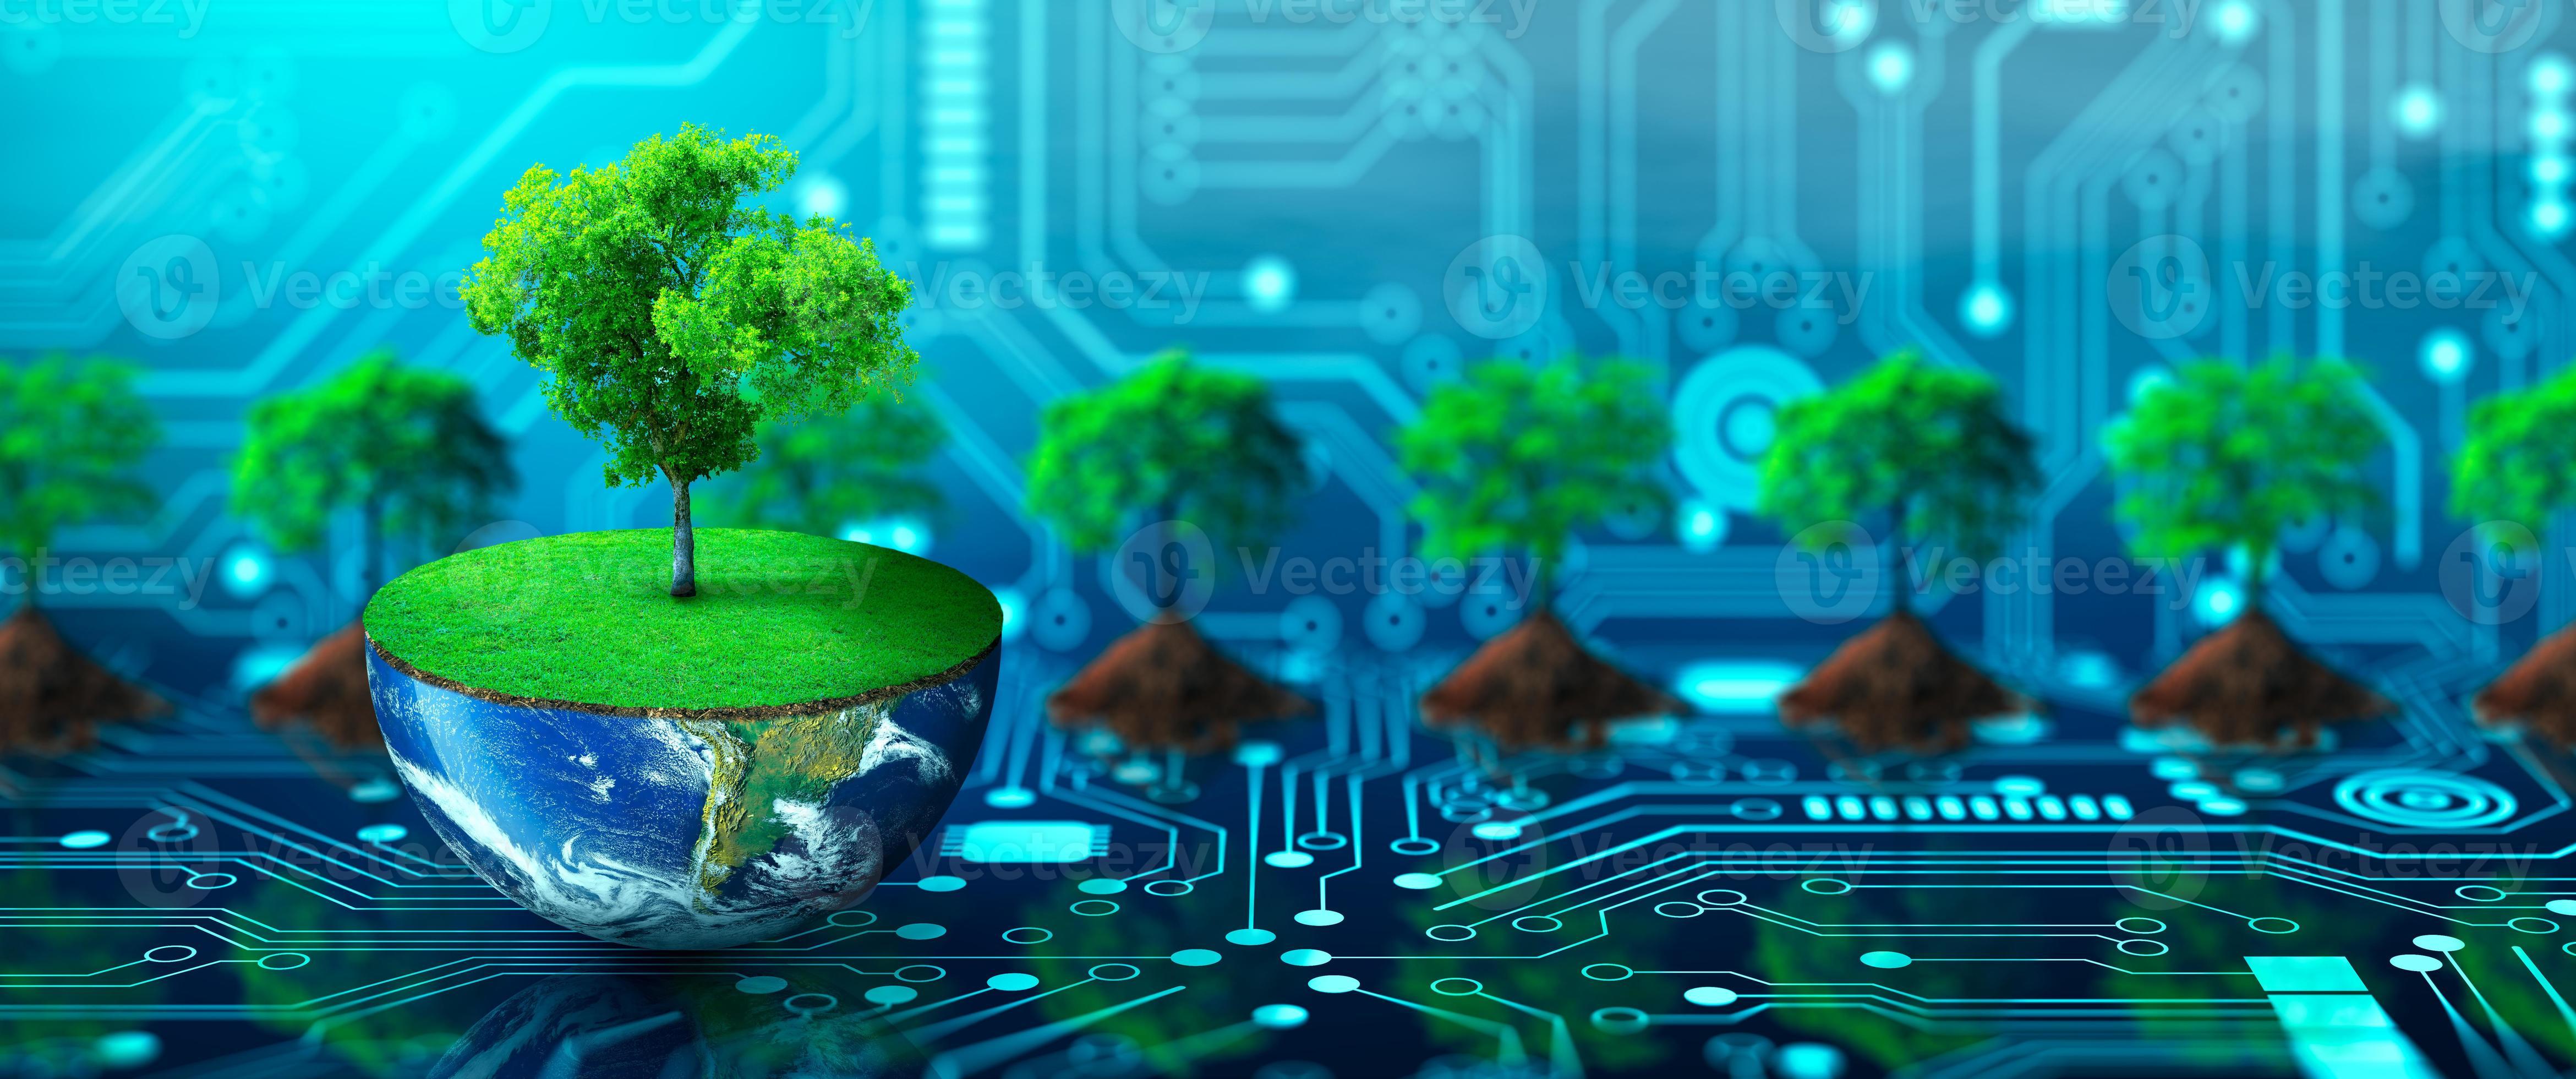 Экологичные технологии для будущего:Green IT